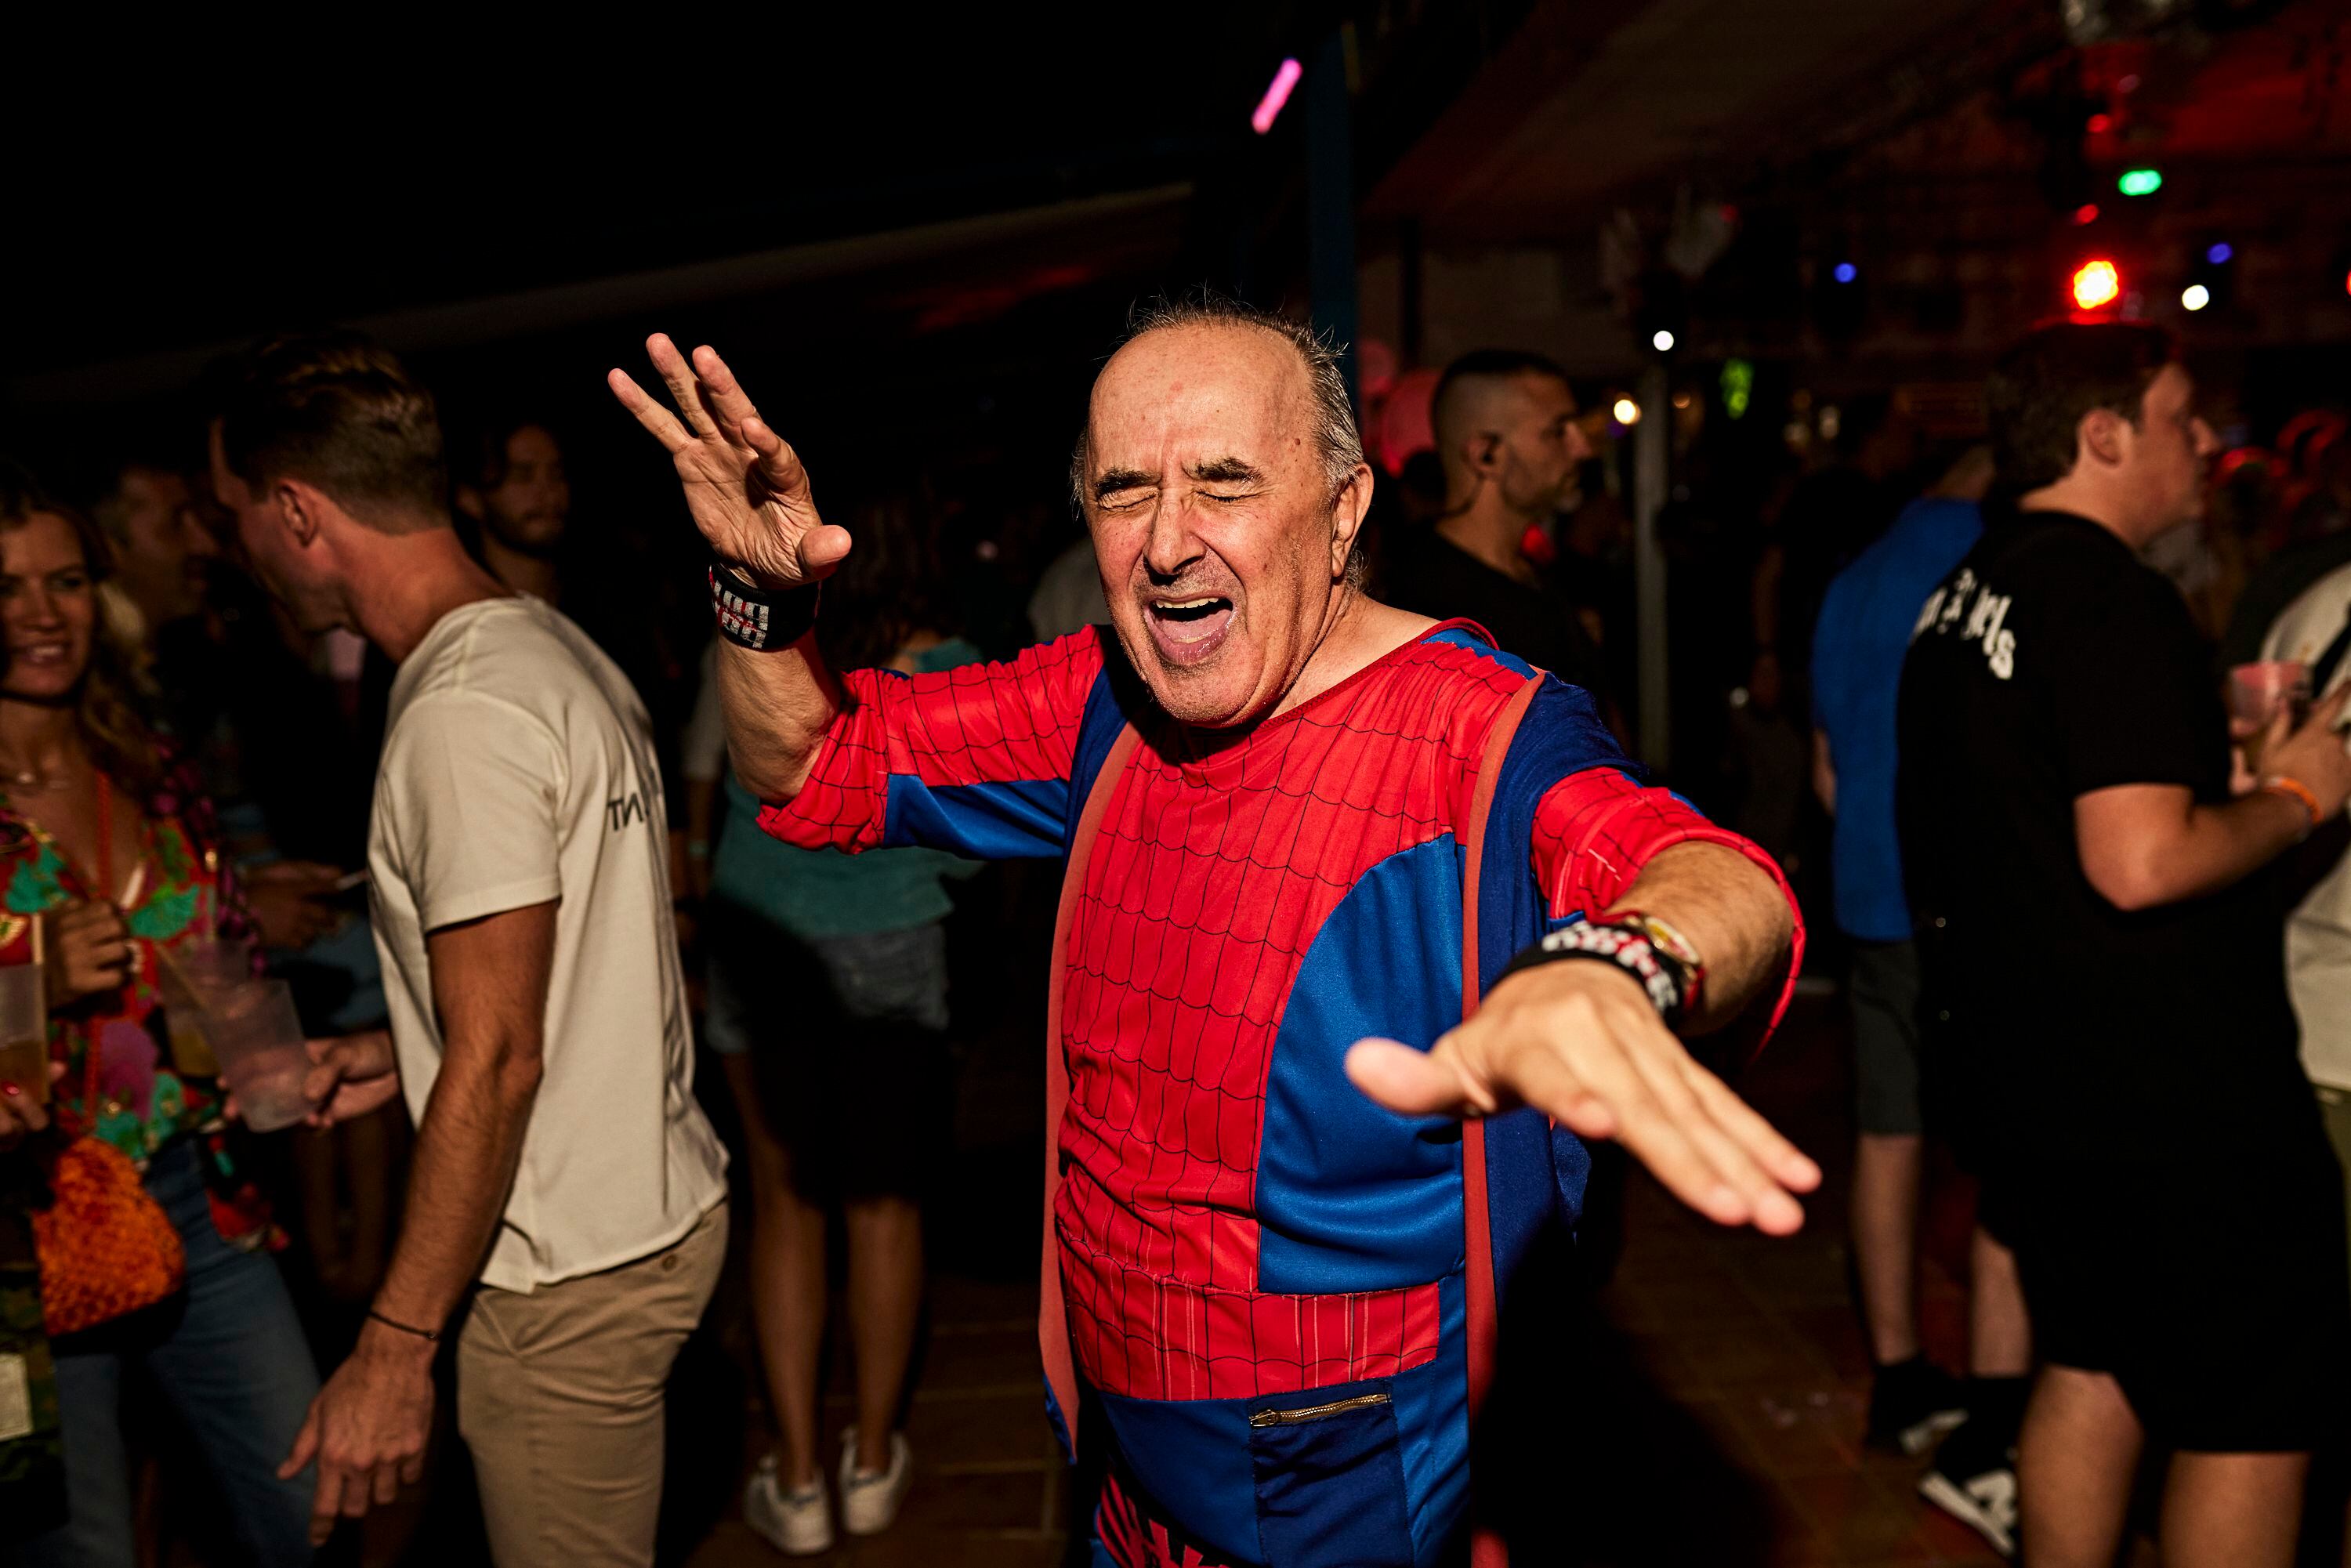 Por Bora Bora han pasado algunos de los DJs más míticos de Ibiza. Algunos han repetido a los platos este fin de semana, para deleite de los asistentes.